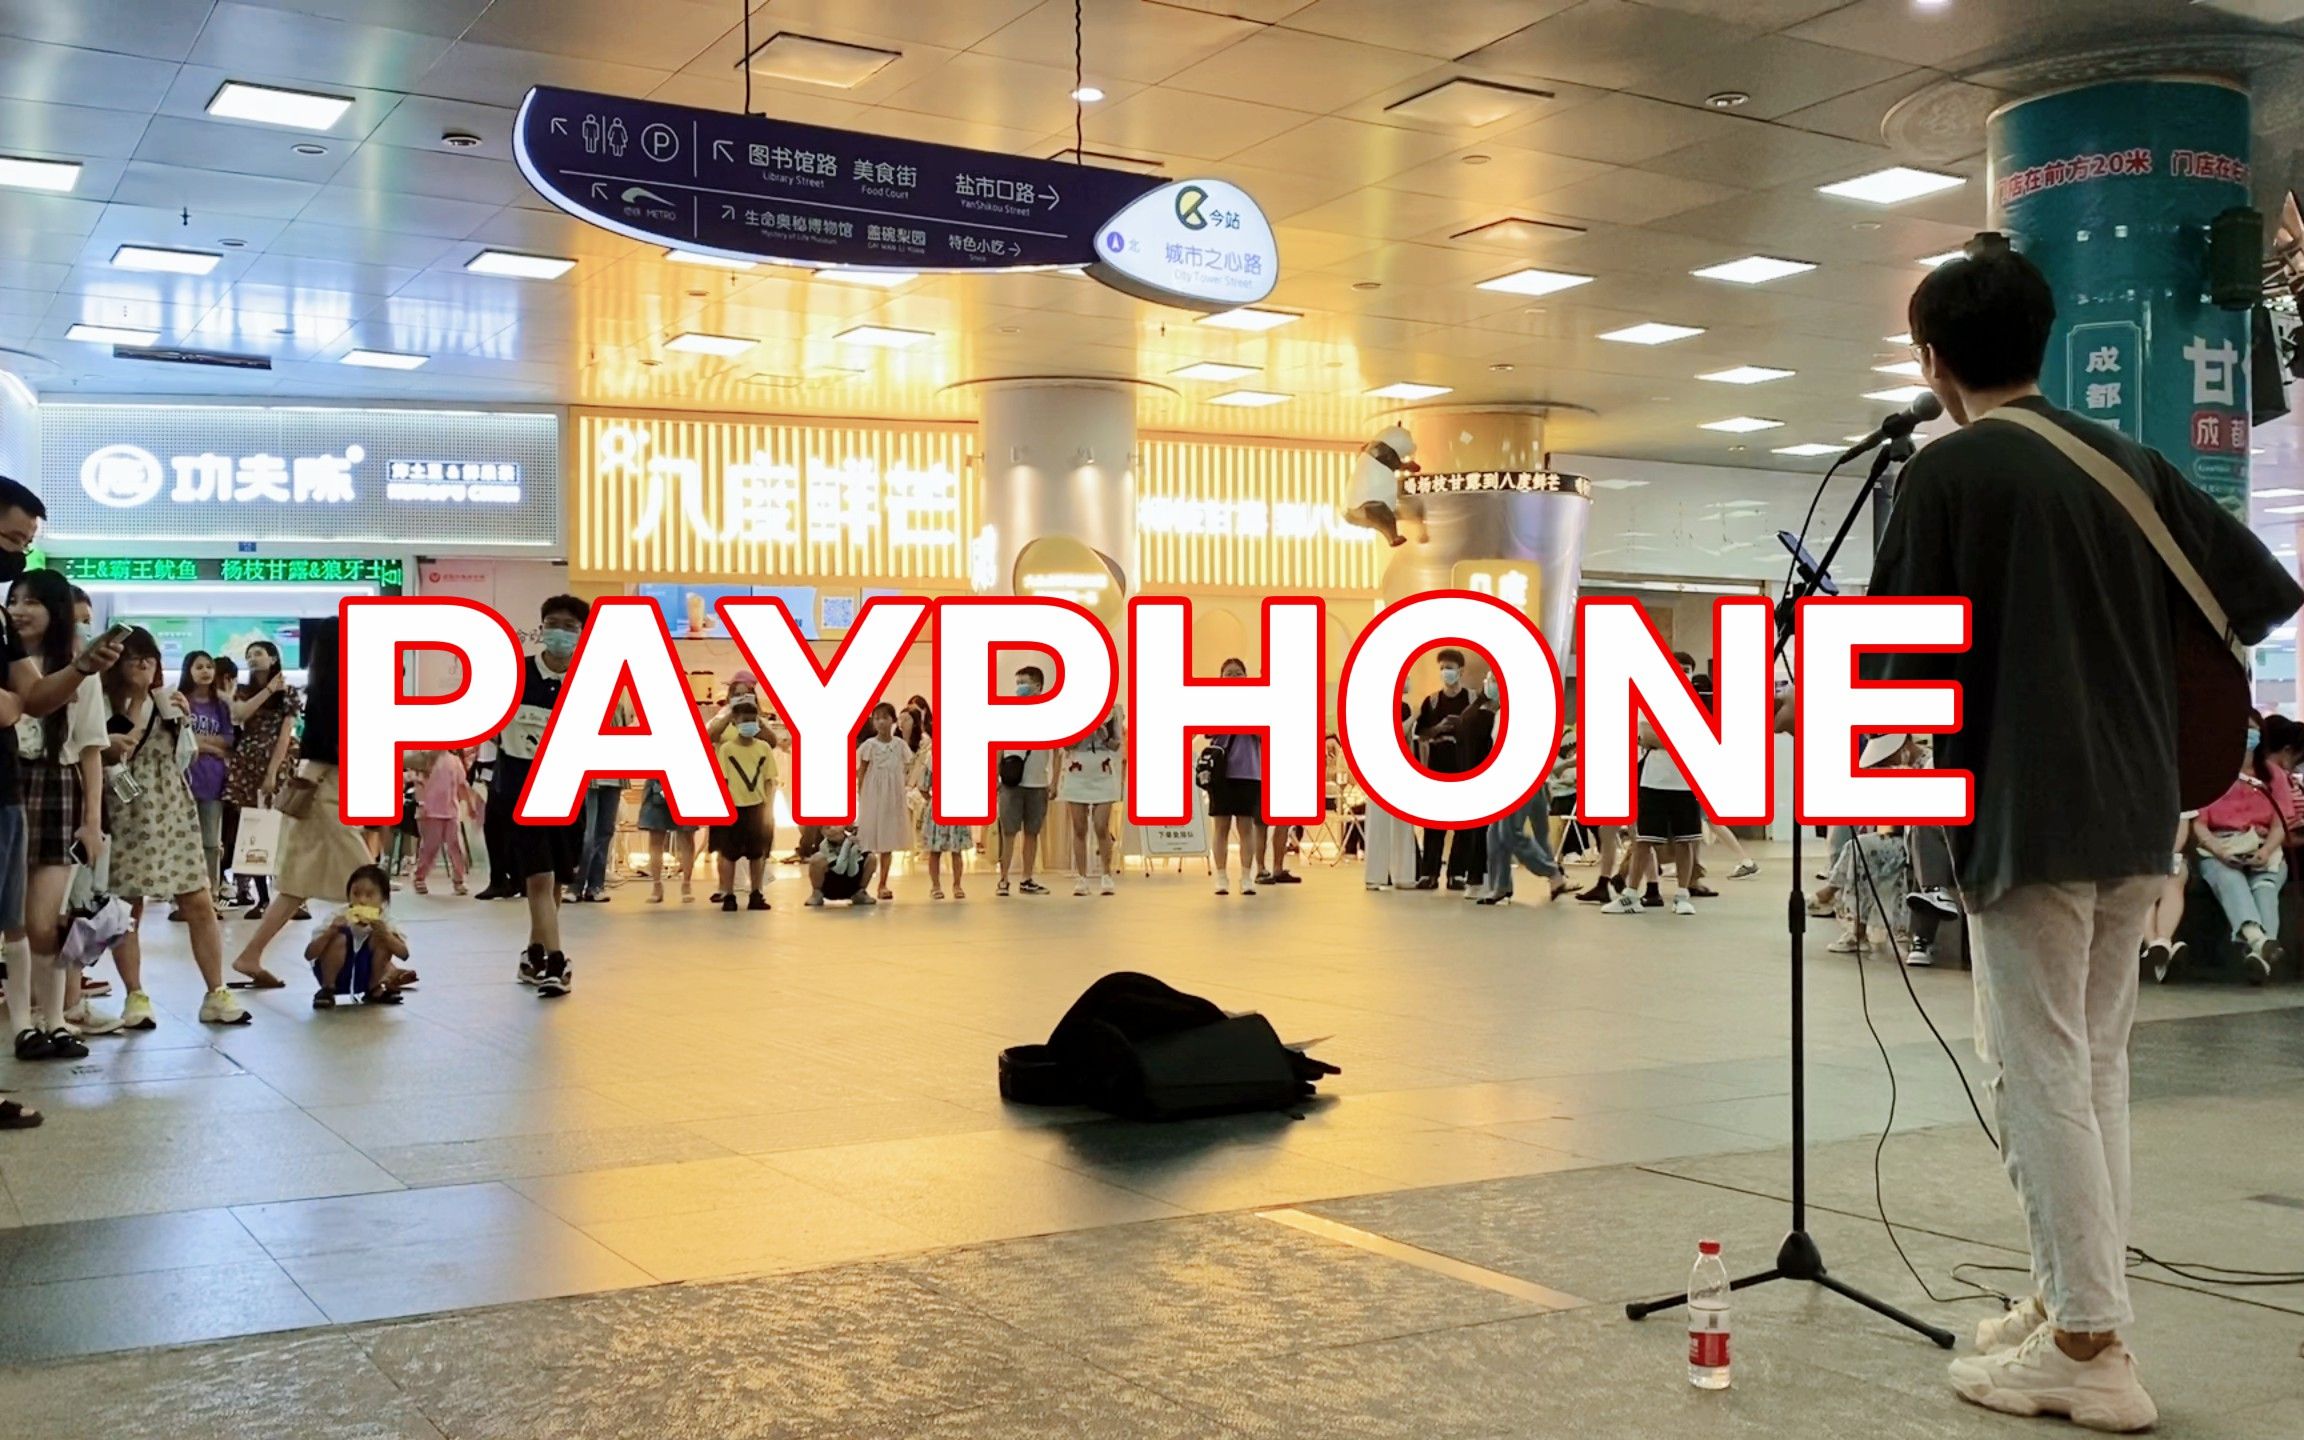 成都天府广场【Payphone】cover：Maroon 5 这首歌算了一下也十年了。。。